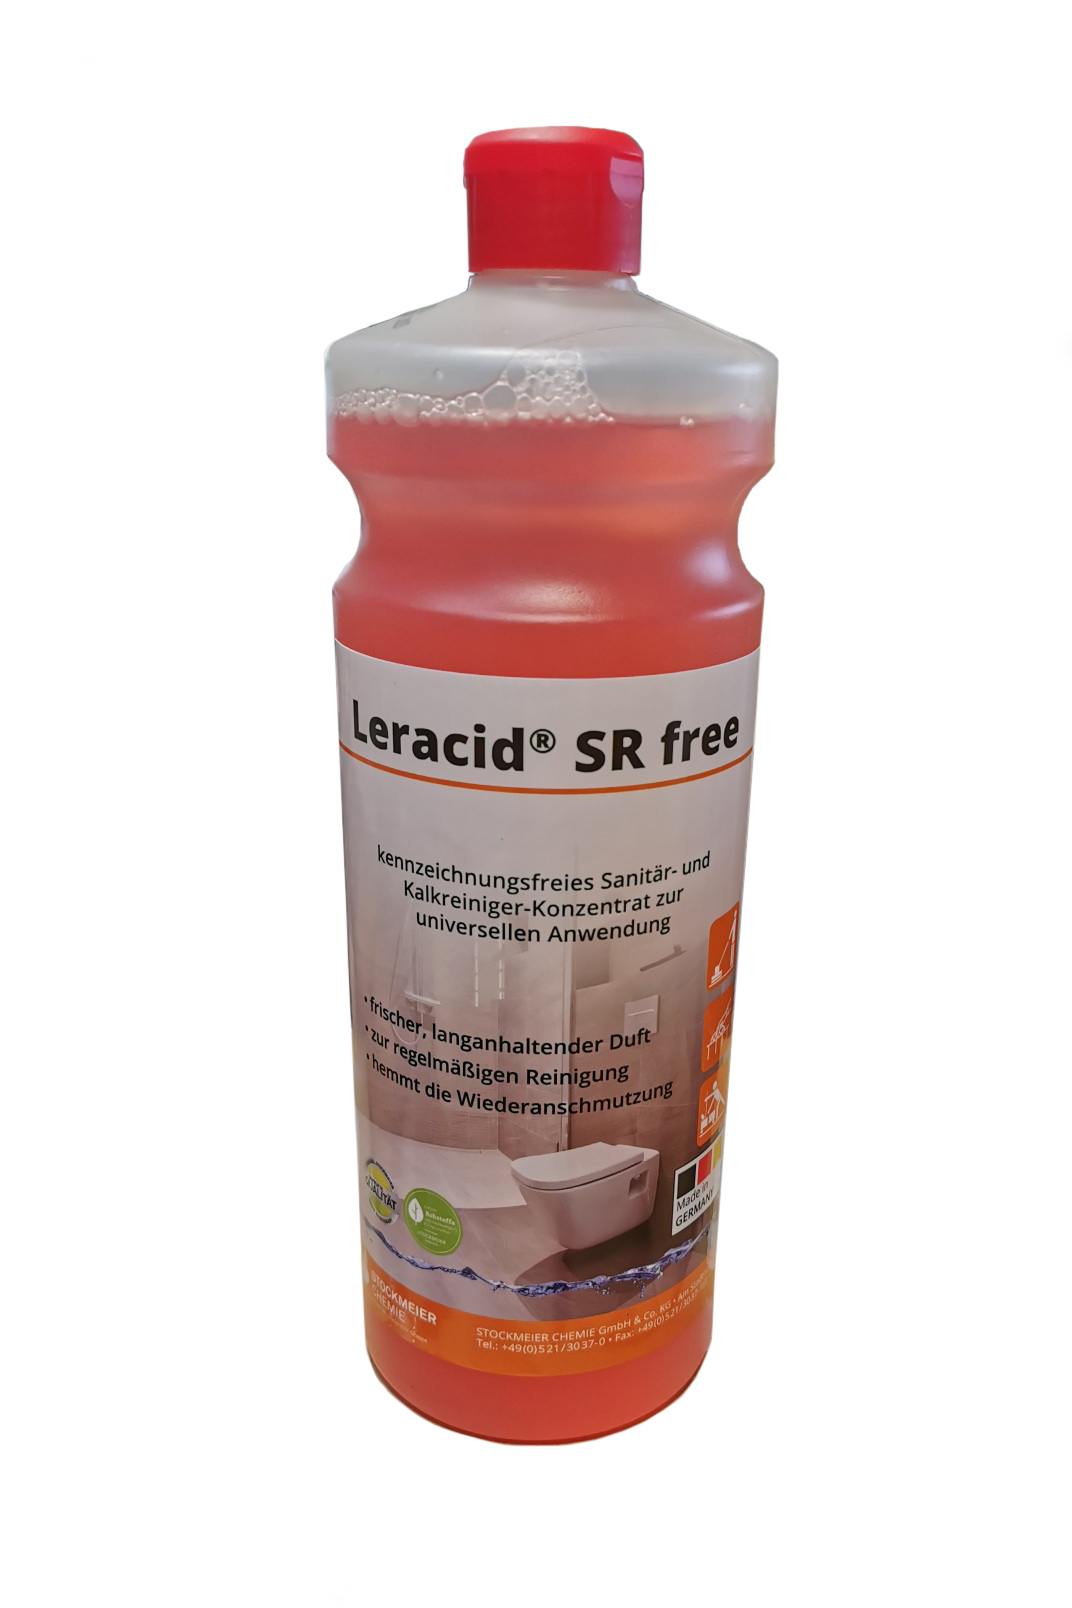 1 Liter Leracid® SR free saurer Reiniger Sanitär- und Schwimmbadbereich